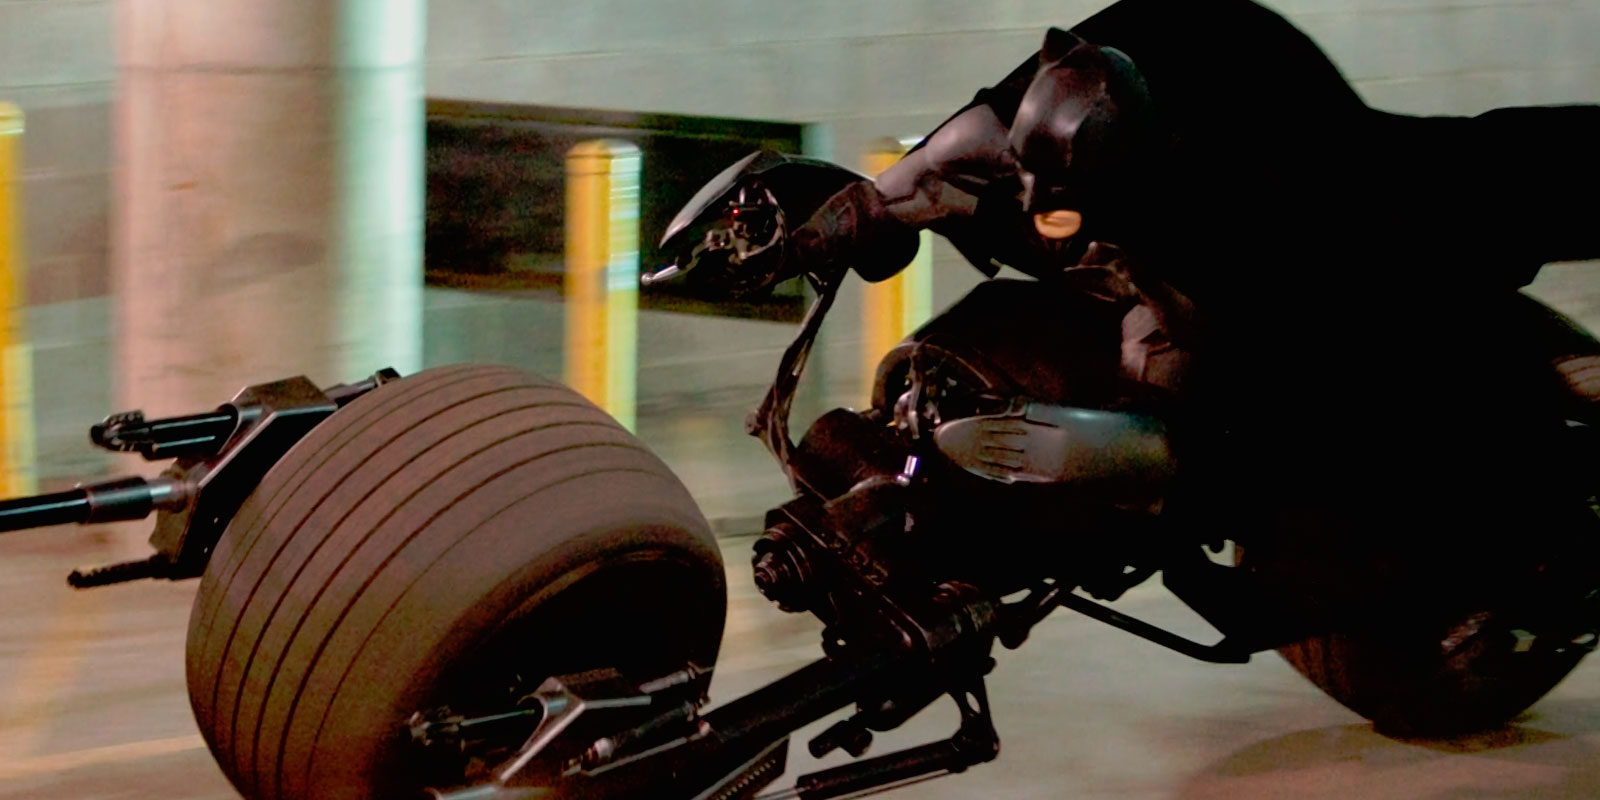 Vendida la moto de 'El Caballero Oscuro' por más de 400.000 dólares